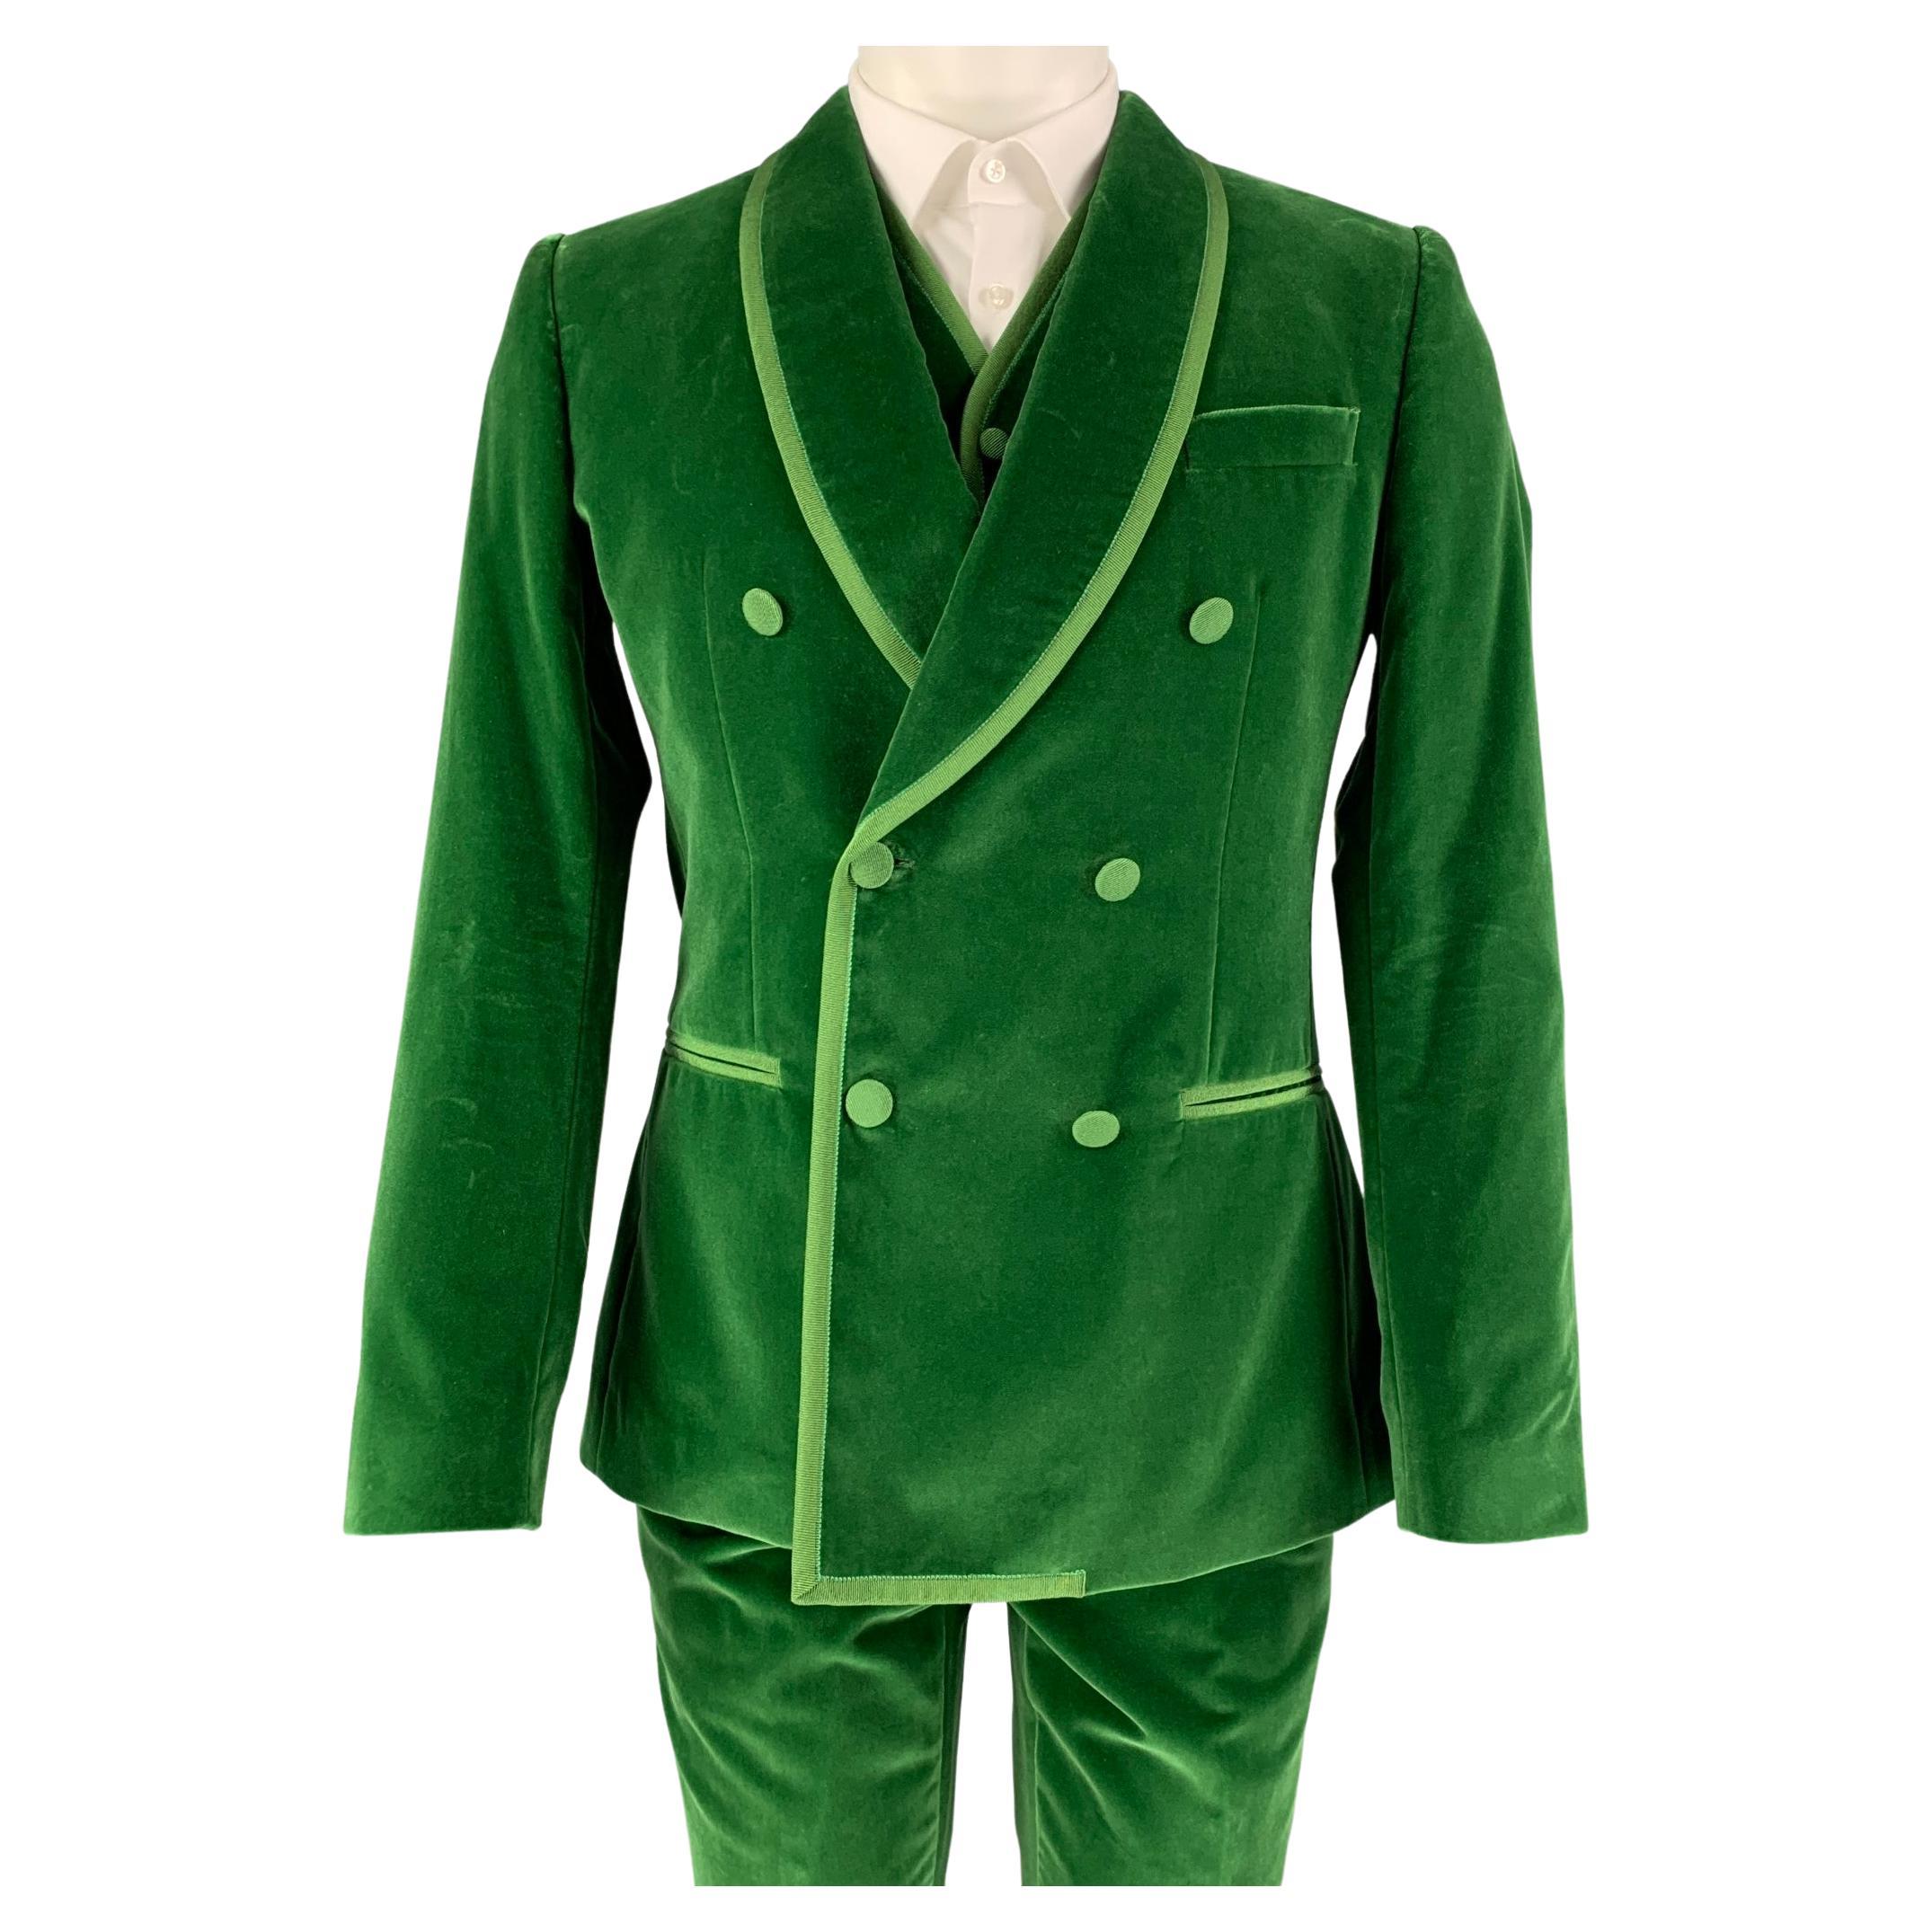 62L Men's Basic Single Breasted Suit 3 button 10 Unique Colors Sizes 36R 